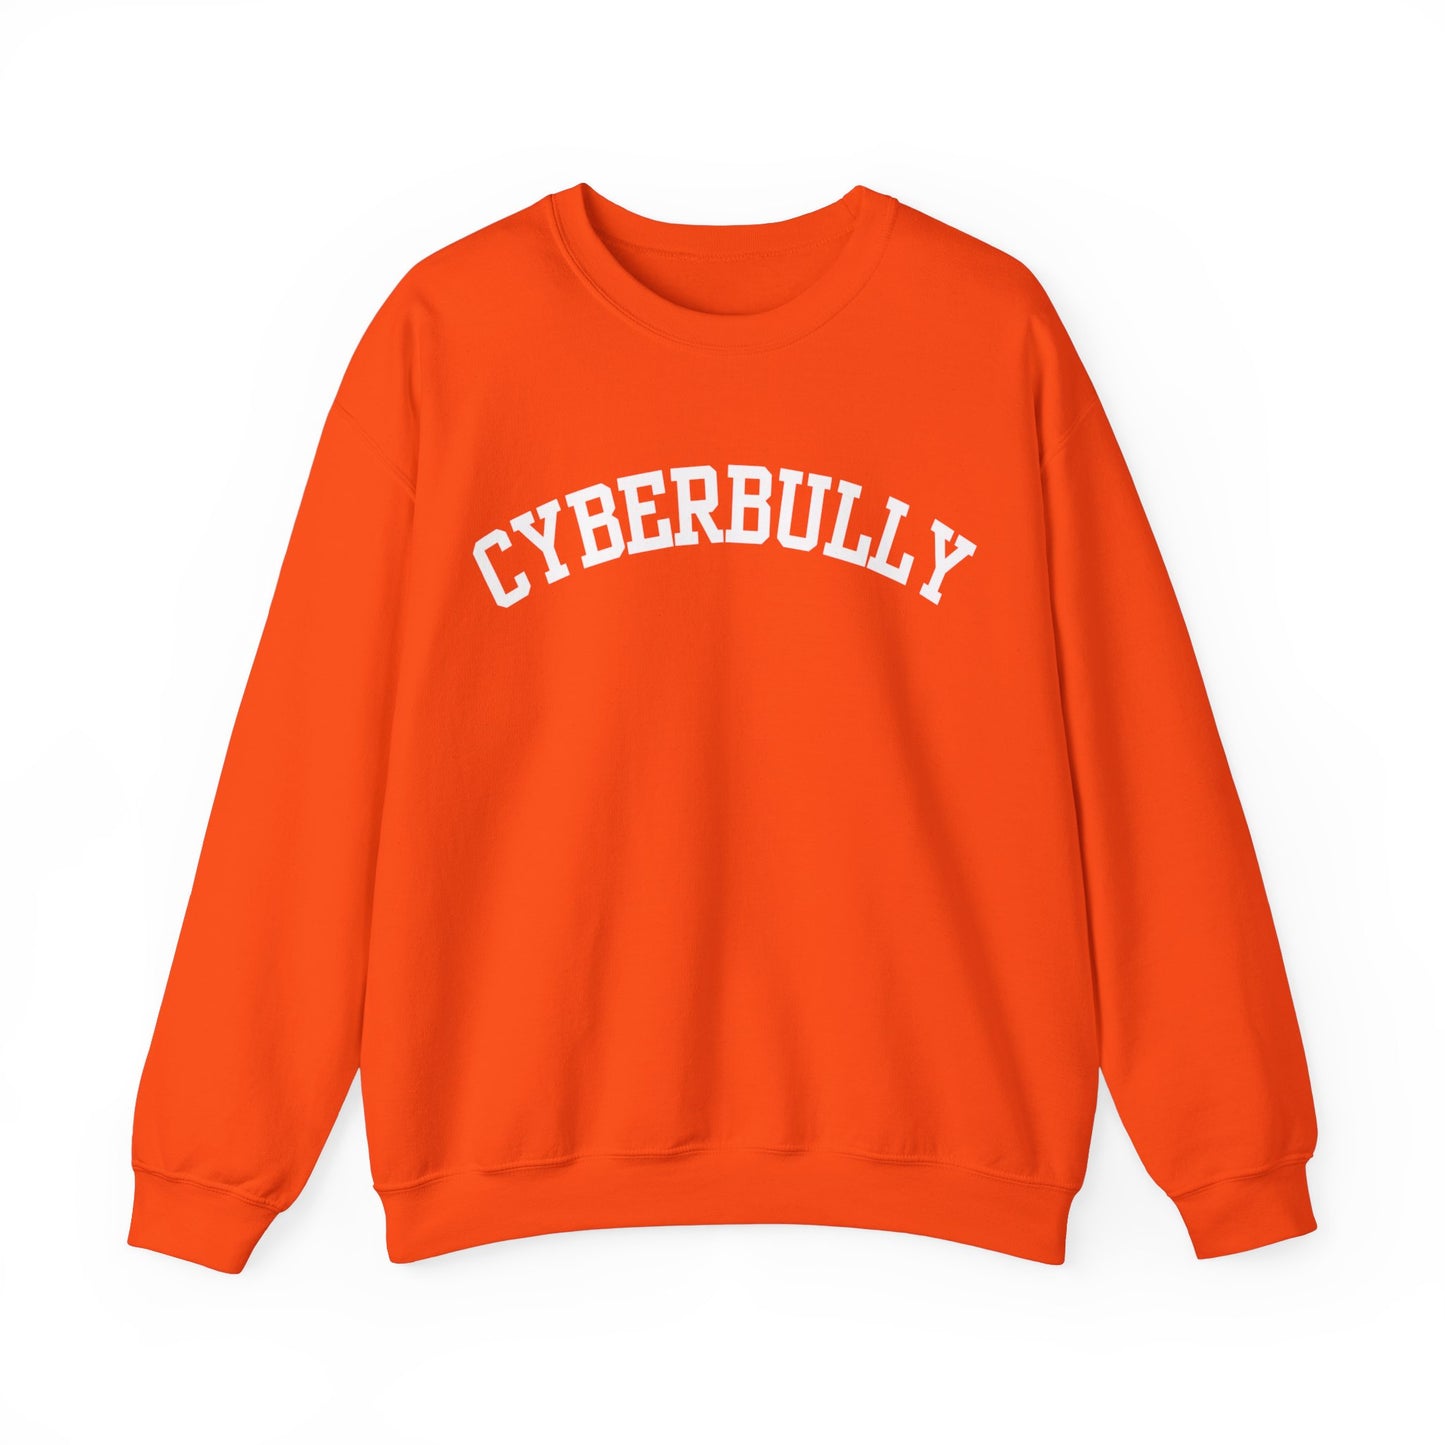 "Cyberbully" Sweatshirt